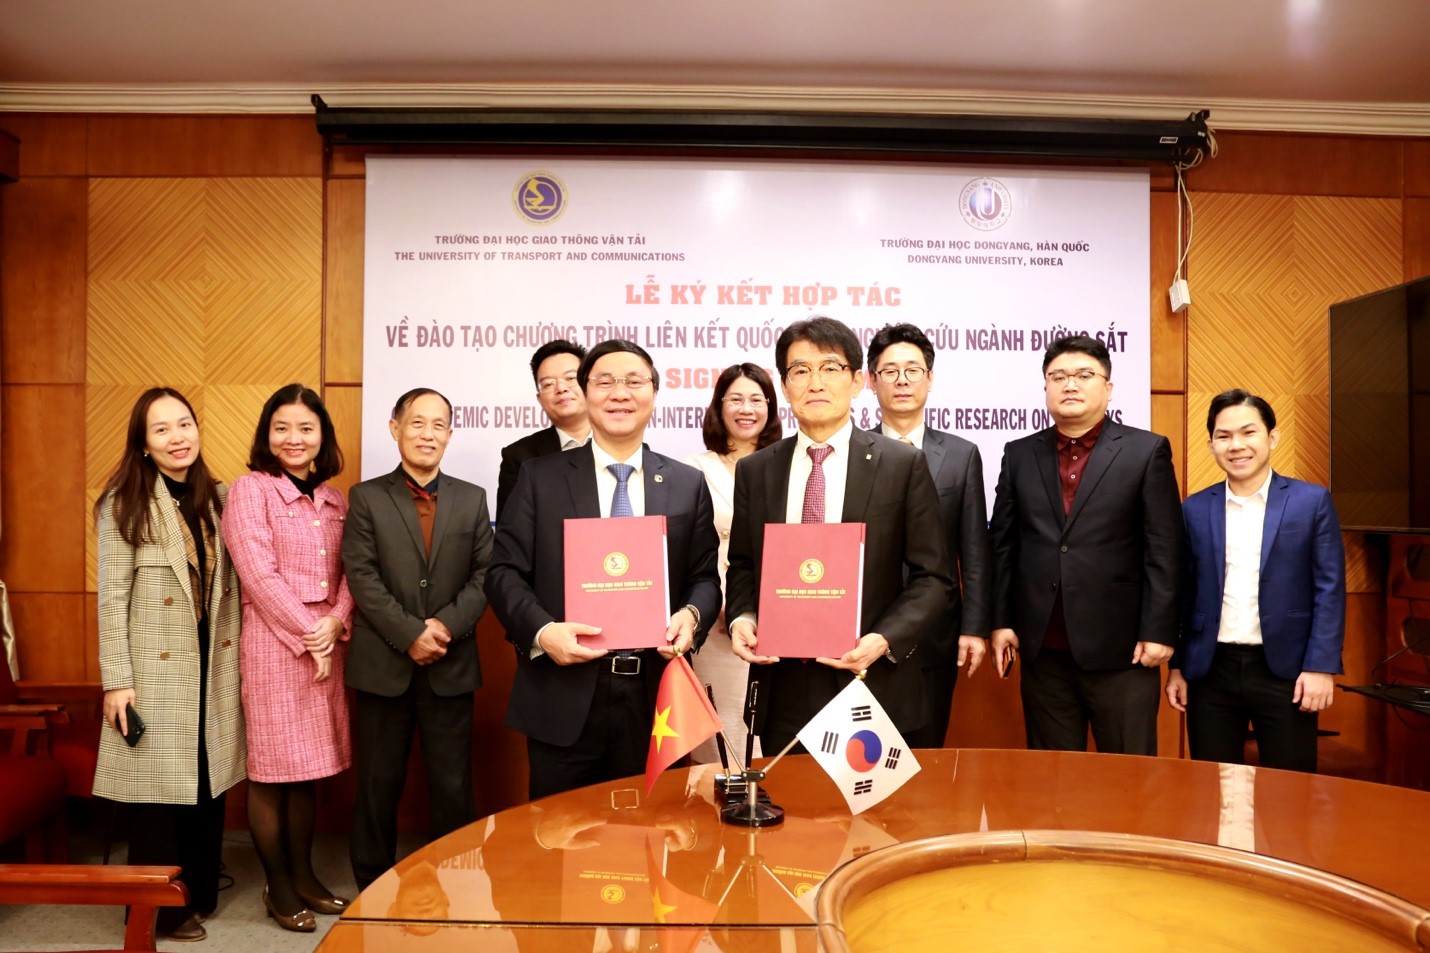 Lễ ký kết hợp tác về đào tạo Chương trình liên kết quốc tế và nghiên cứu ngành Đường sắt với Trường Đại học Dongyang, Hàn Quốc